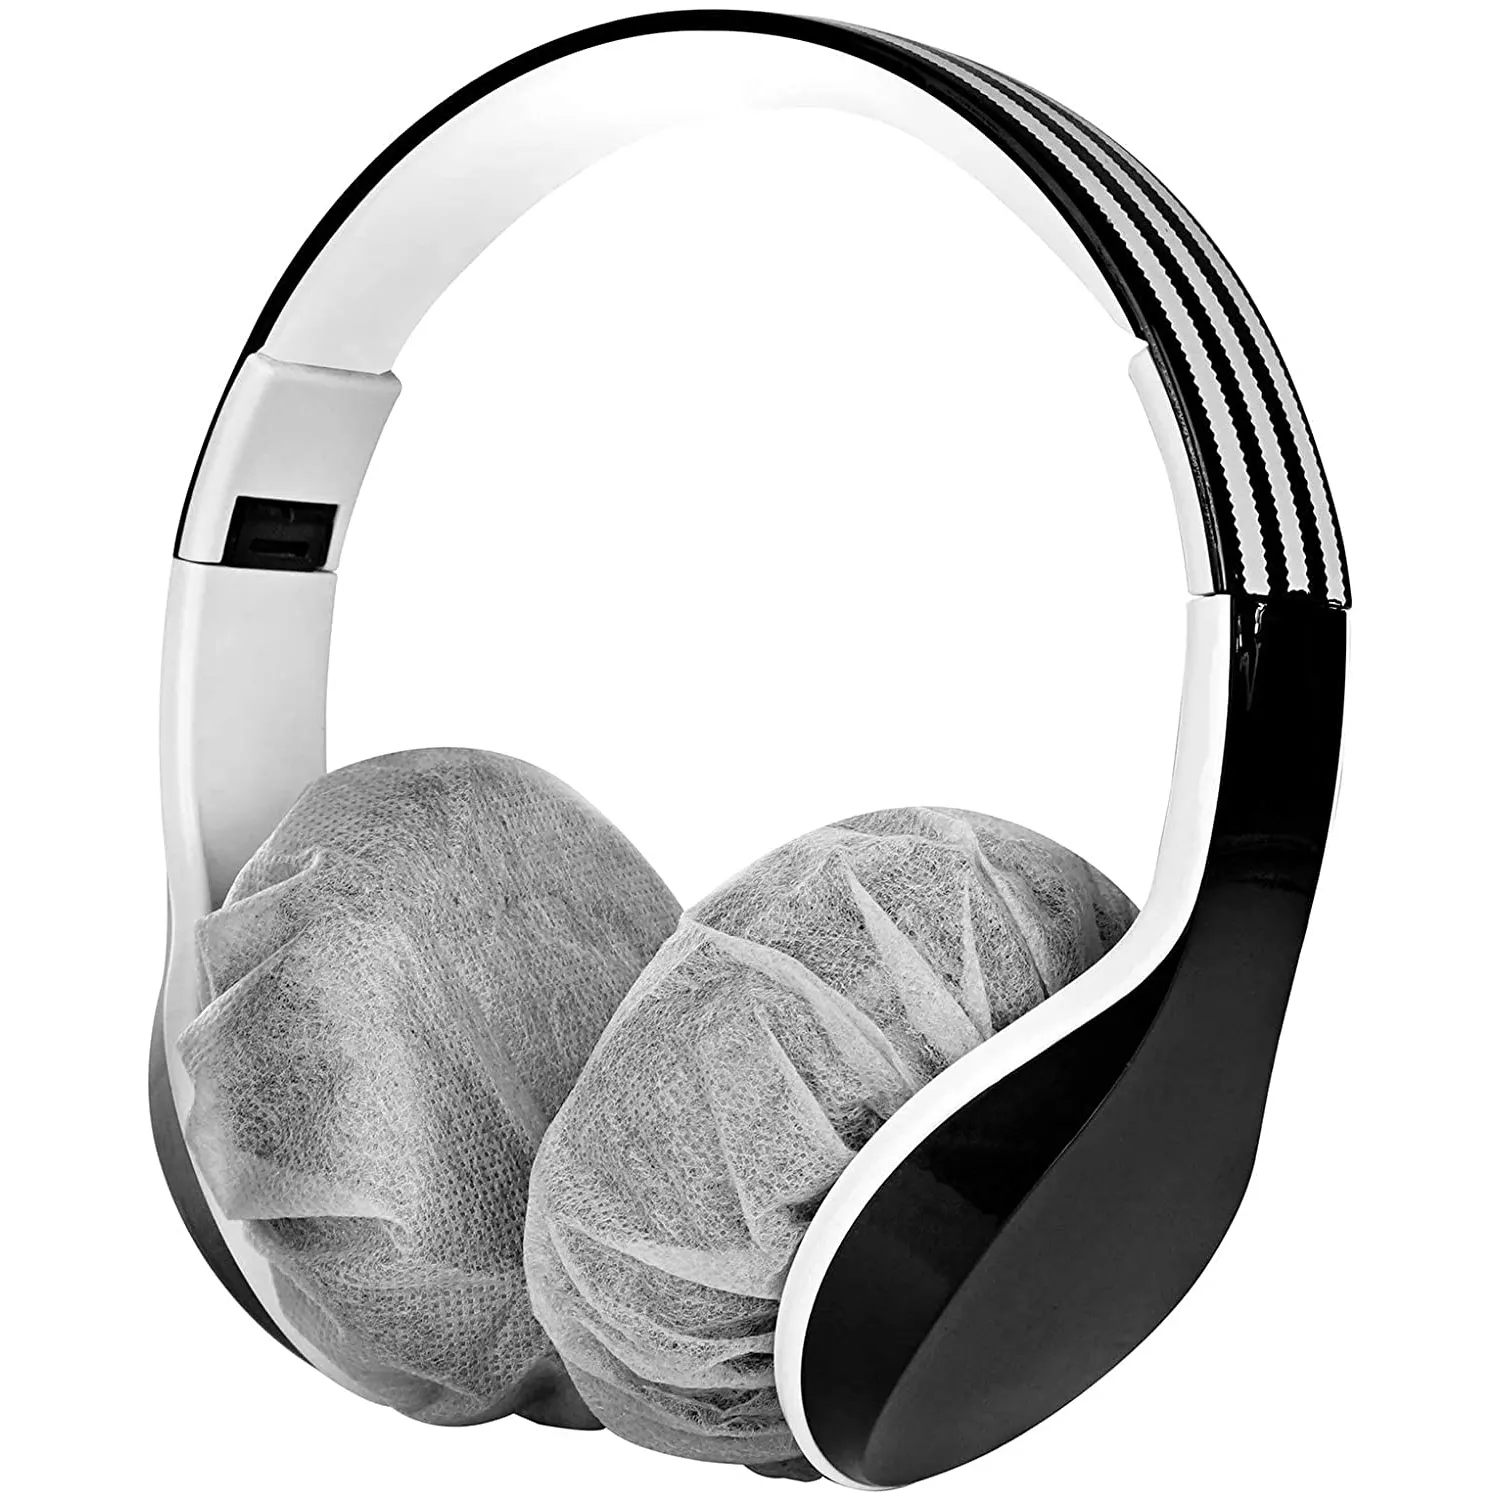 أغطية سماعات الأذن مقاس 11 سم، 100 قطعة أغطية لسماعات الأذن فائقة المطاطية للاستخدام مرة واحدة لمعظم أنواع سماعات الأذن مع سدادات للأذن مقاس 10-12 سم